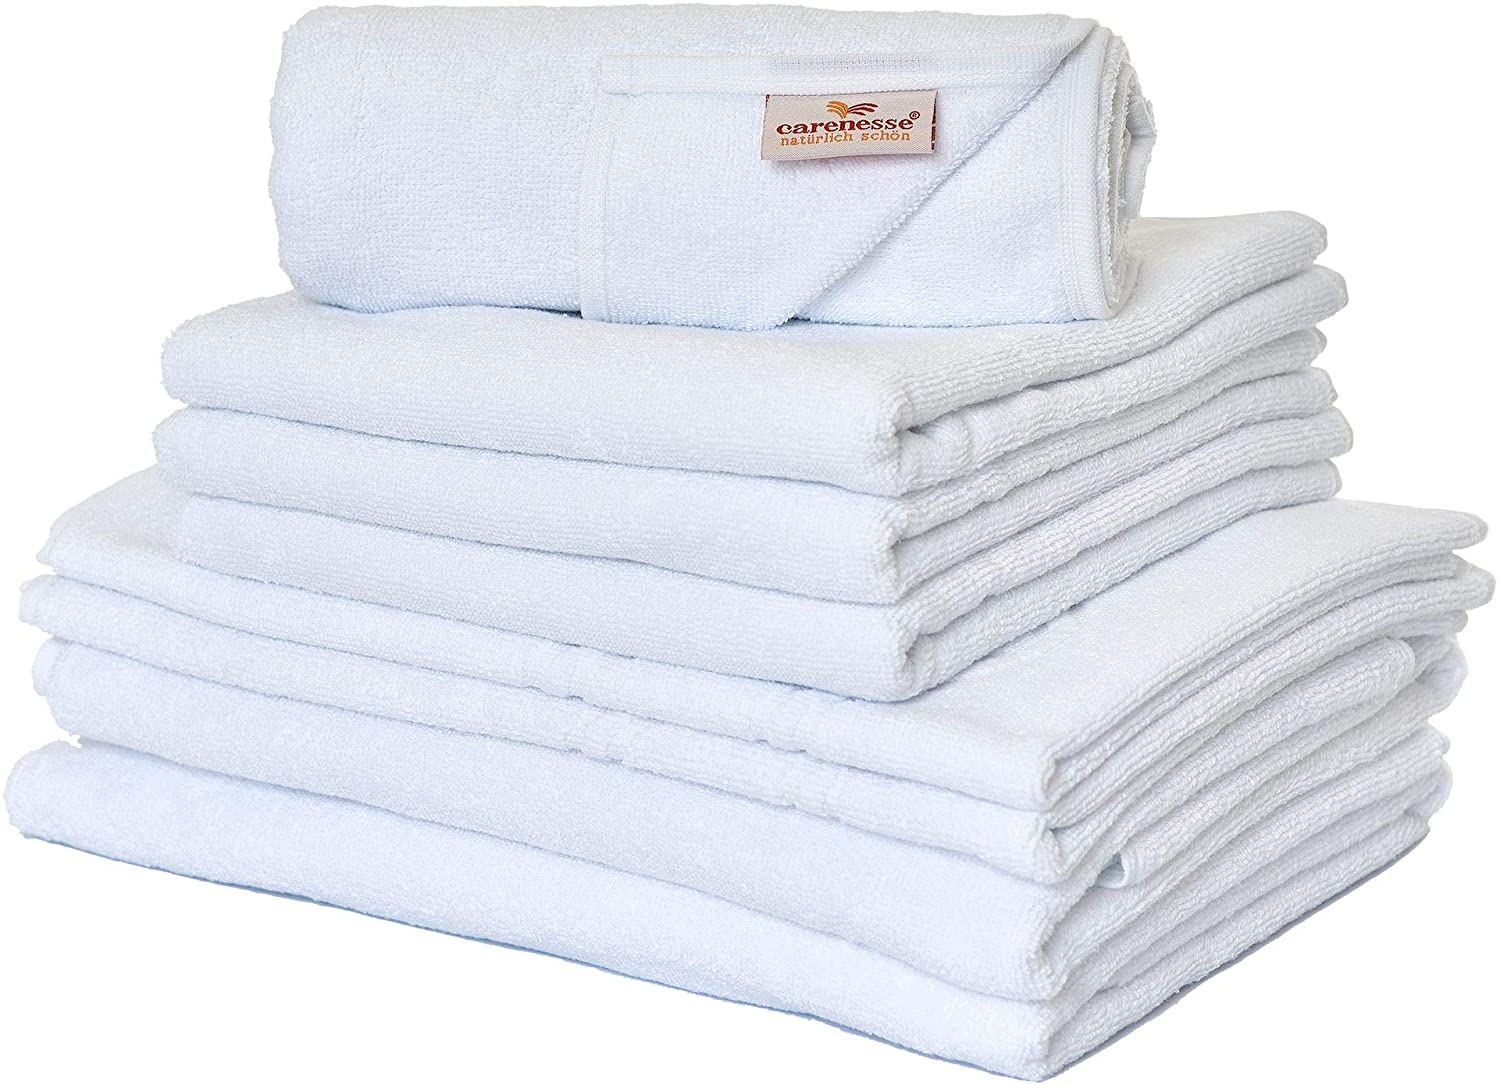 Hochwertig zu extrem niedrigen Preisen Handtuch Set 8 tlg. Basic hier weiß-Premium Qualität Hotel günstig kaufen